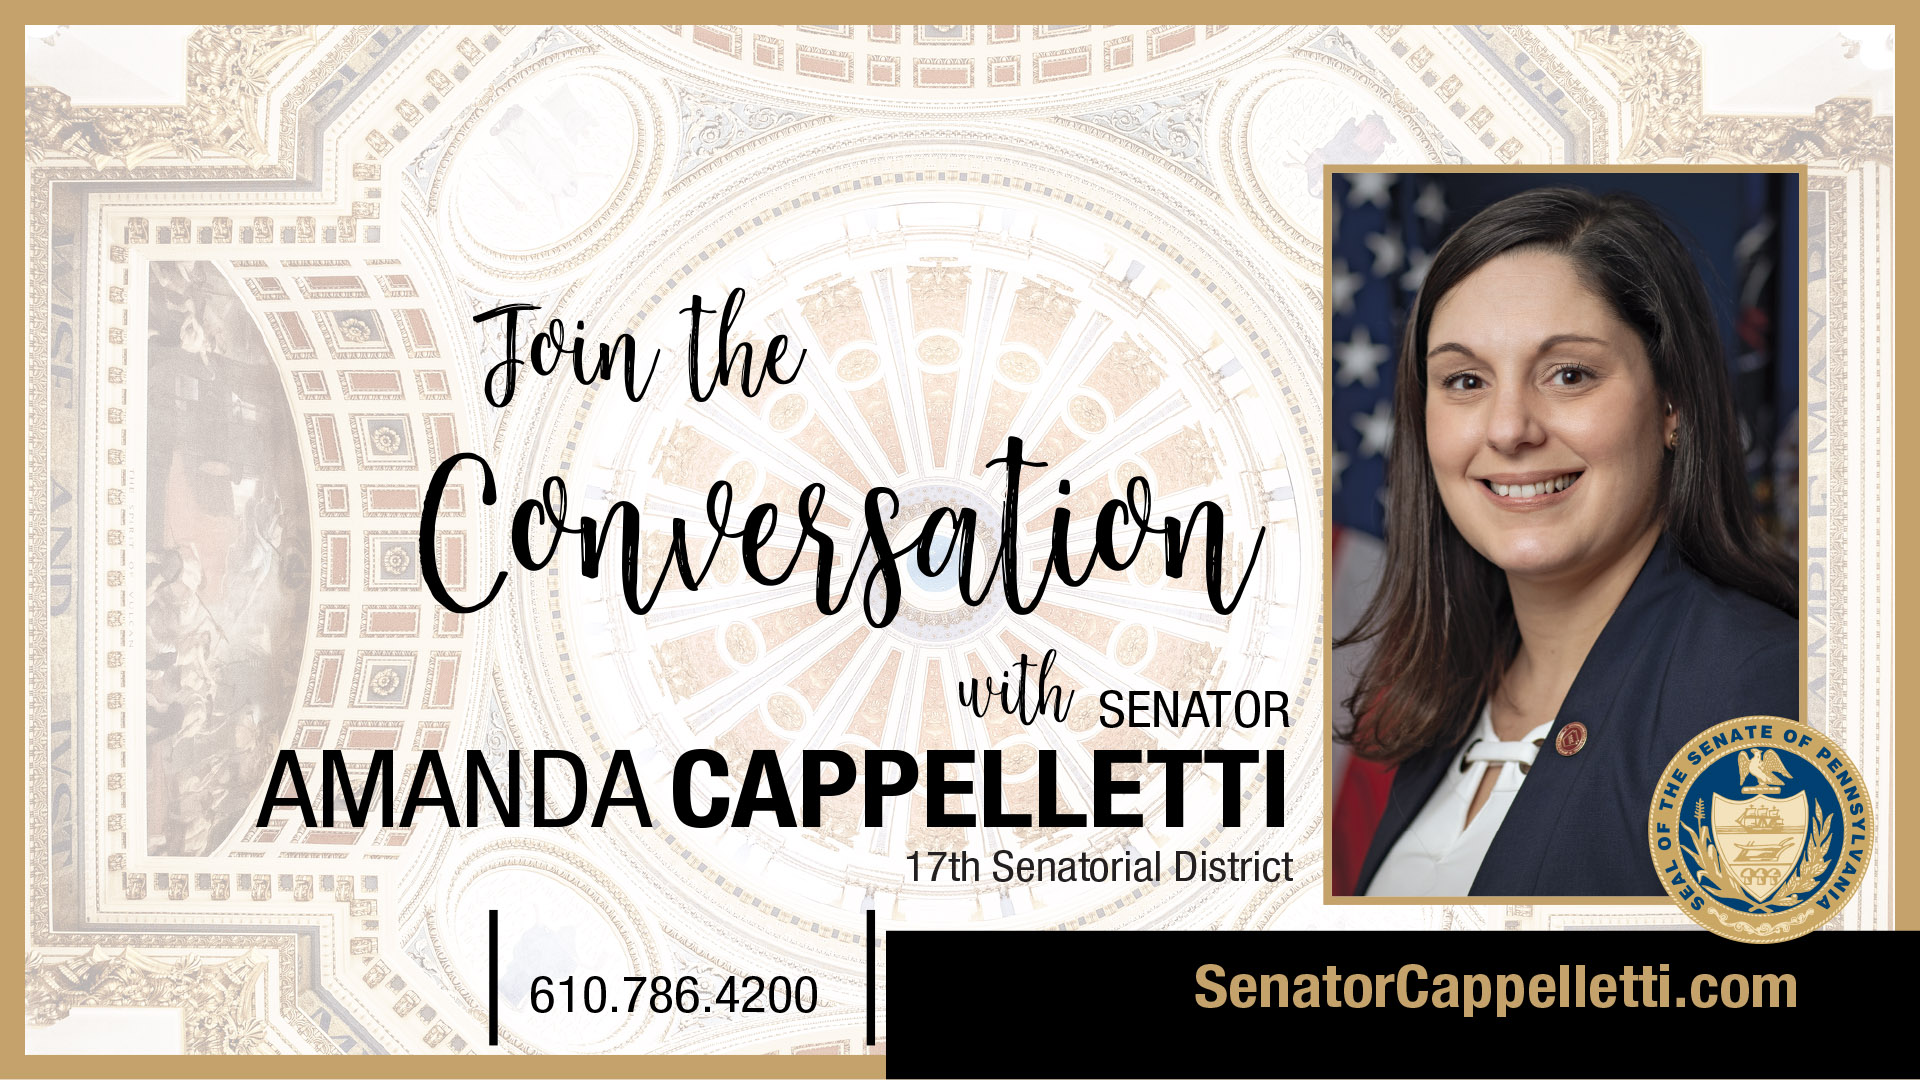 PA State Senator Amanda Cappelletti